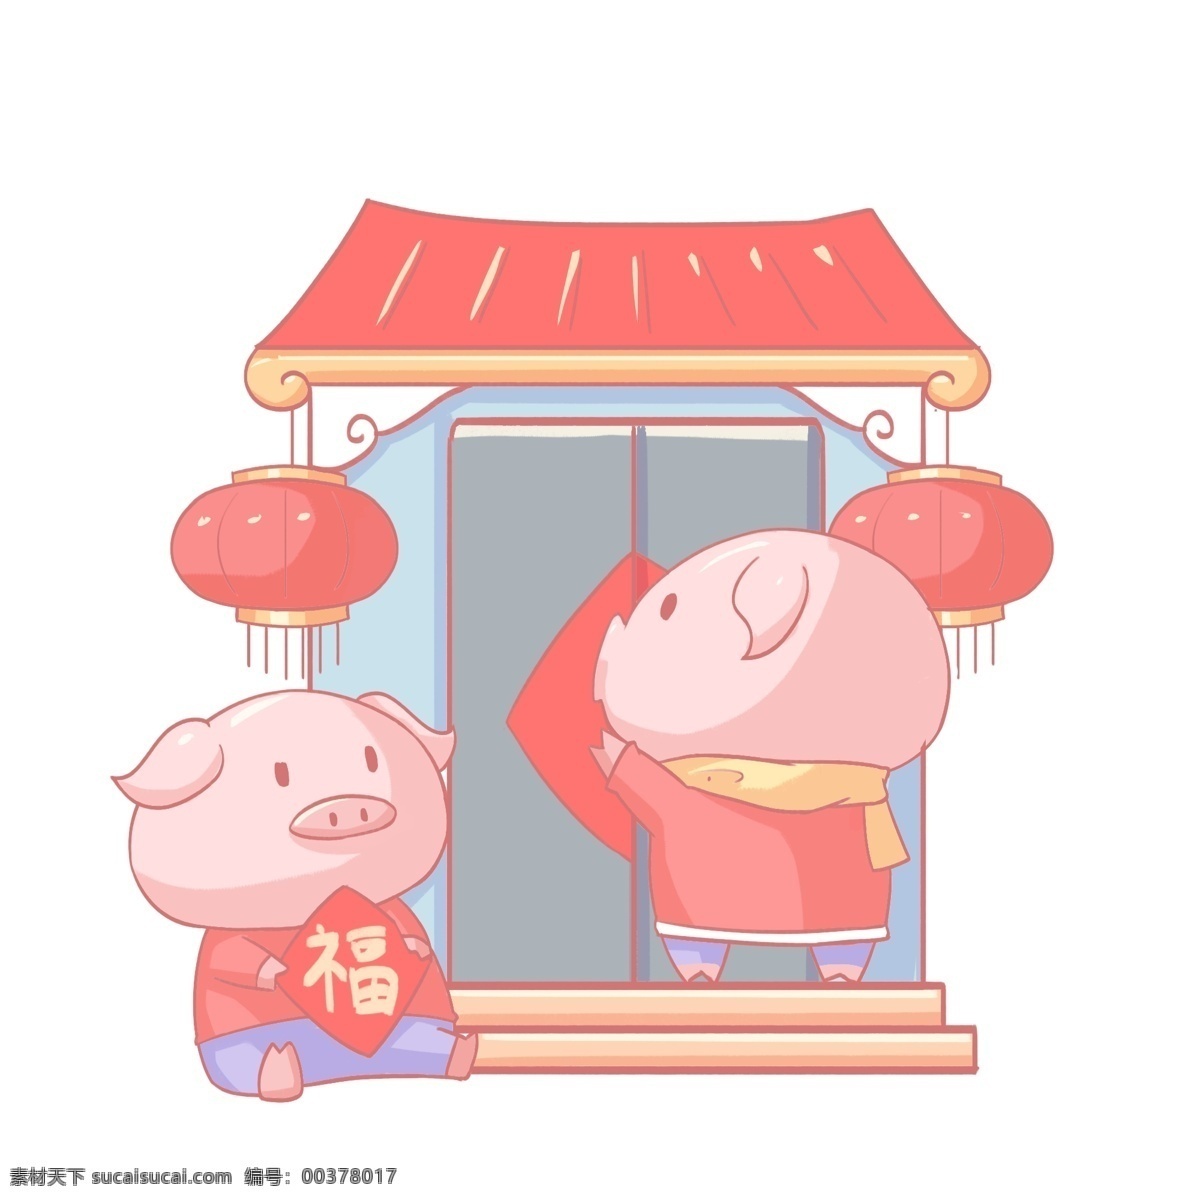 2019 农历 新年 小 猪 门口 贴 福字 免 扣 猪年大吉 新年快乐 人物 迎春节 卡通手绘风格